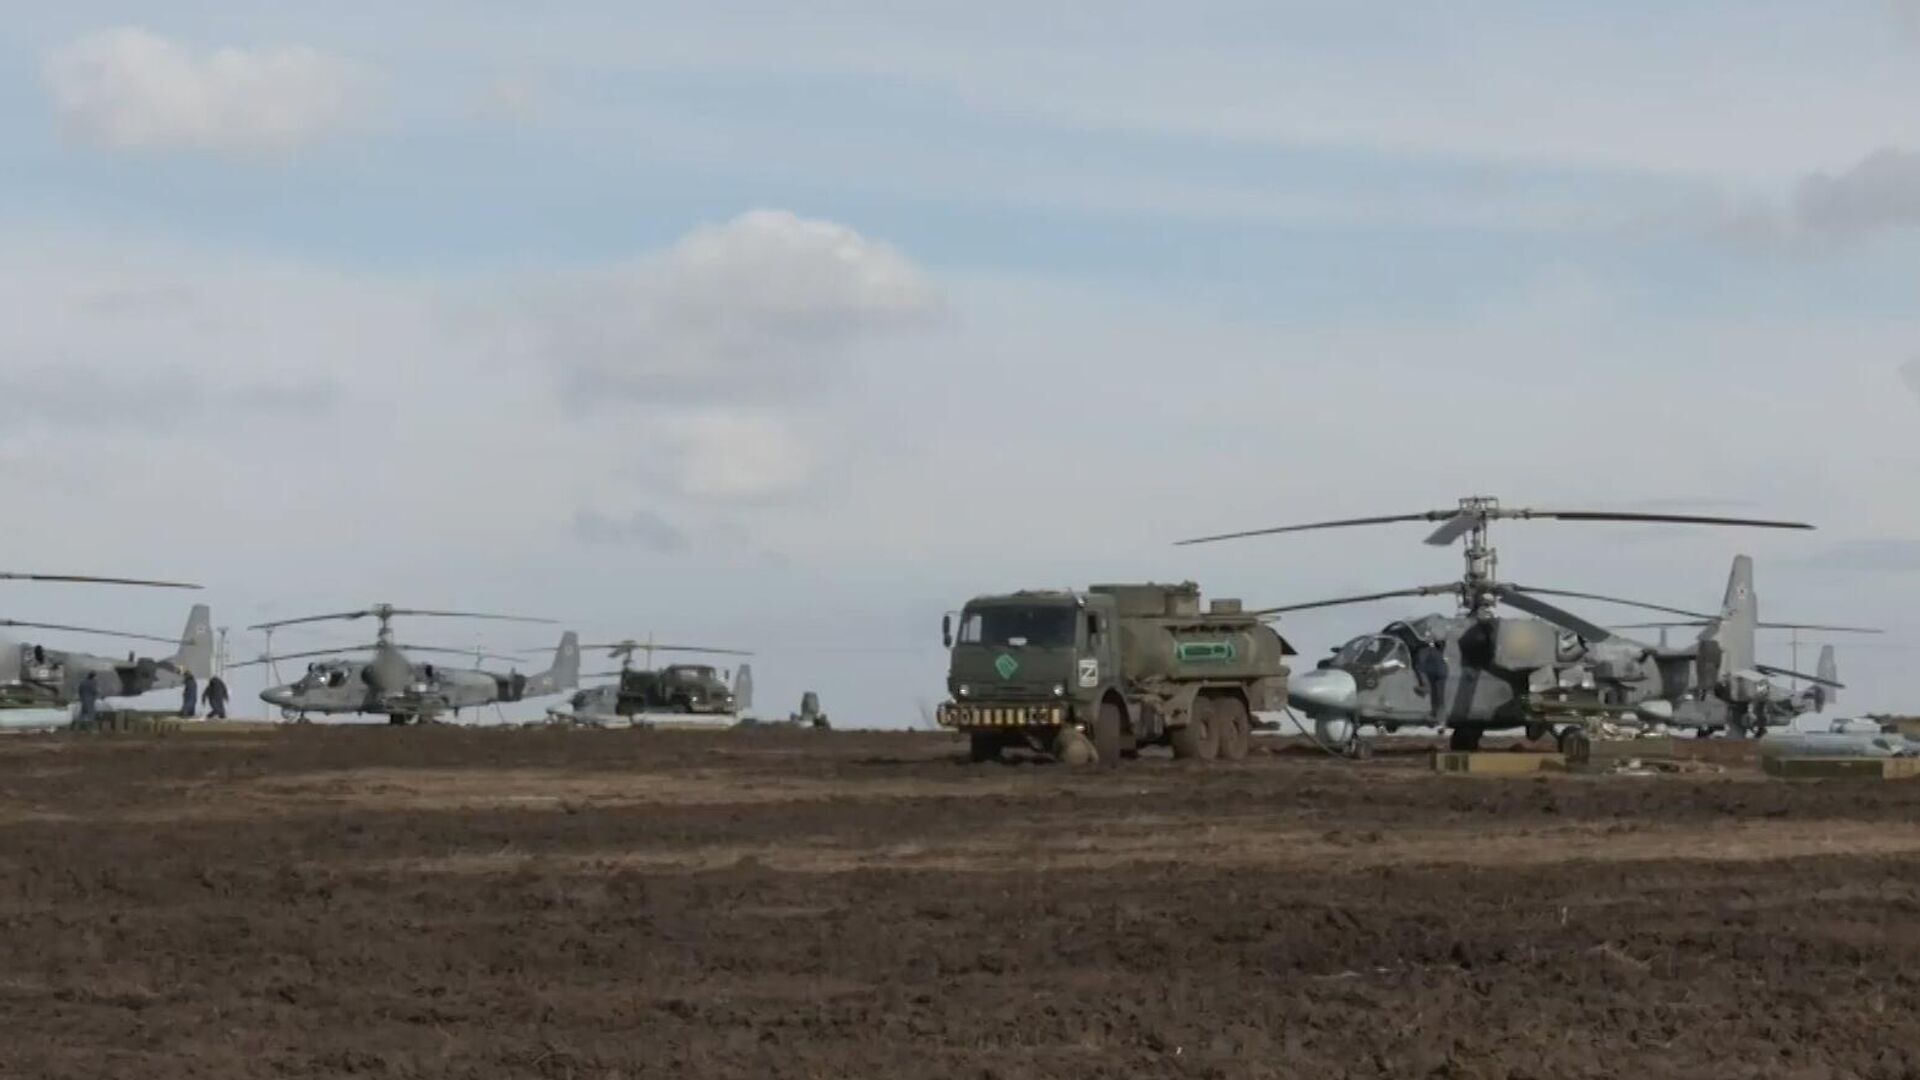 Ударные вертолеты Ка-52 ВКС РФ перед выполнением боевого задания в ходе специальной военной операции на Украине - Sputnik Армения, 1920, 03.03.2022